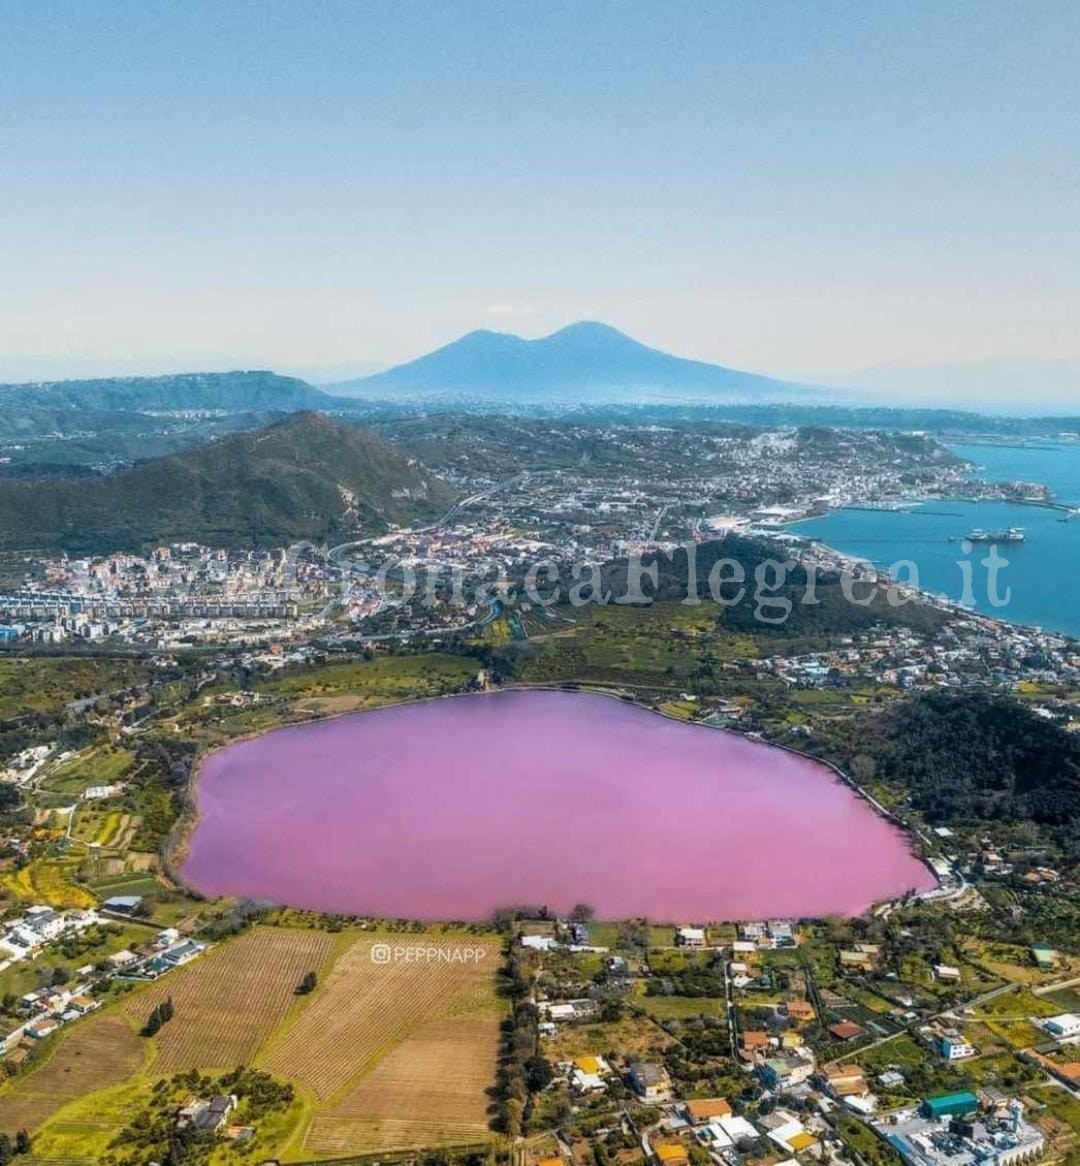 POZZUOLI/ Il lago d’Averno si tinge di rosa e l’immagine fa il giro del mondo